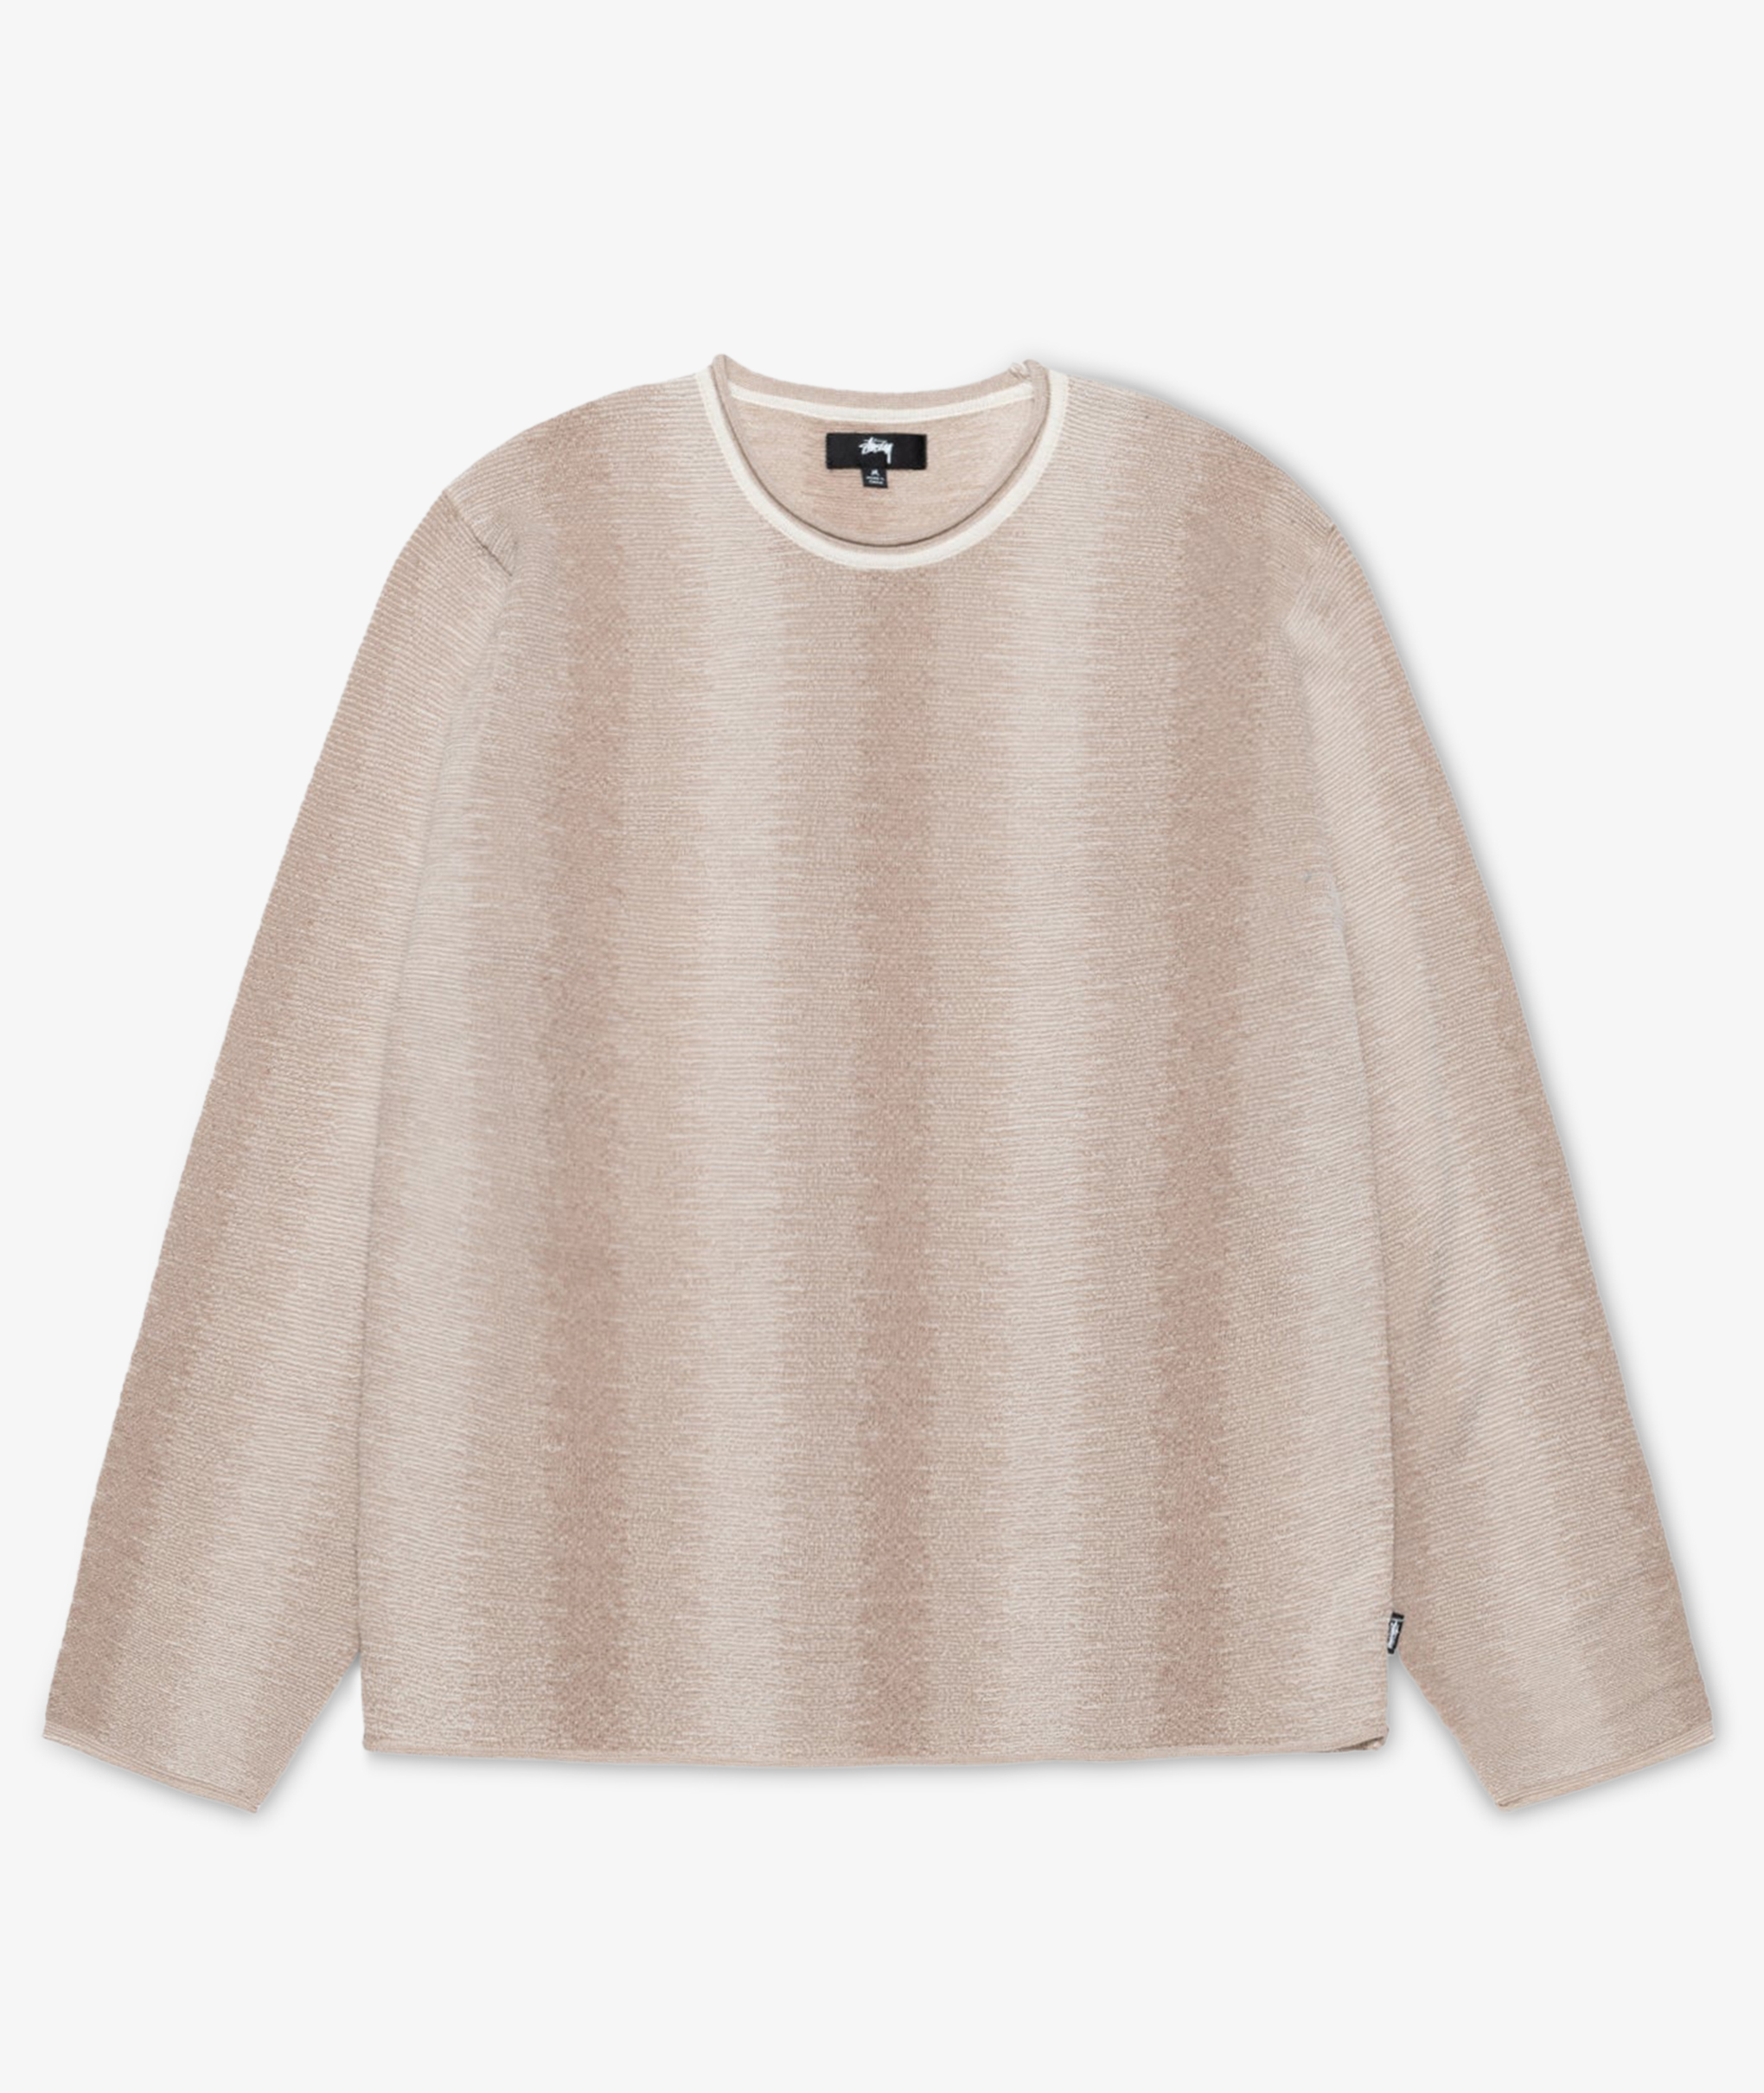 https://www.norsestore.com/shared/174/130/stuessy-shadow-stripe-sweater_u.jpg